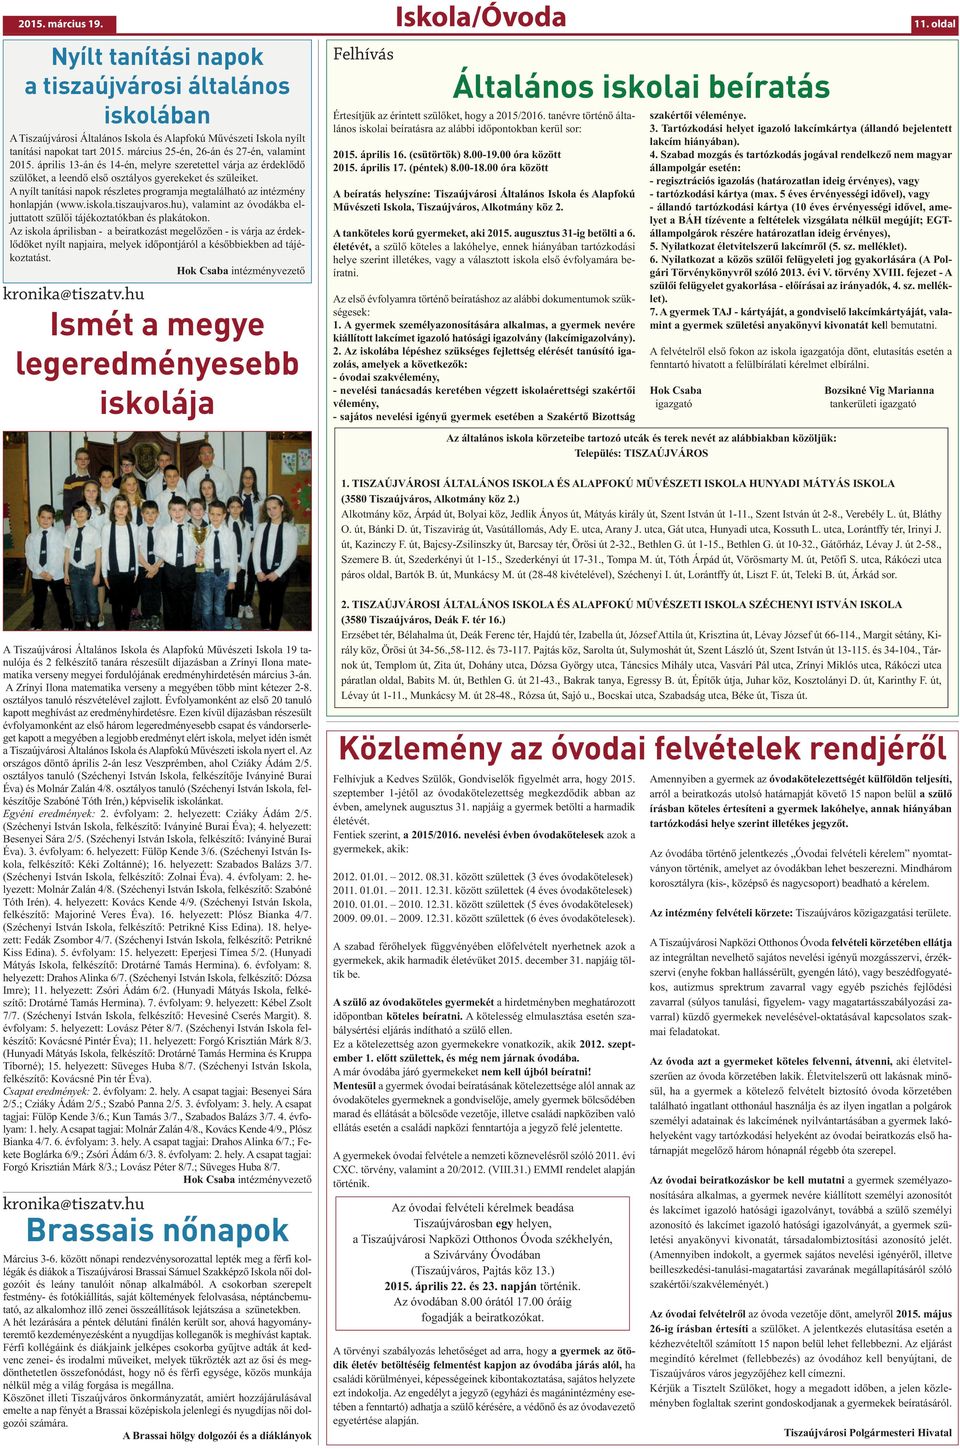 A nyílt tanítási napok részletes programja megtalálható az intézmény honlapján (www.iskola.tiszaujvaros.hu), valamint az óvodákba eljuttatott szülői tájékoztatókban és plakátokon.